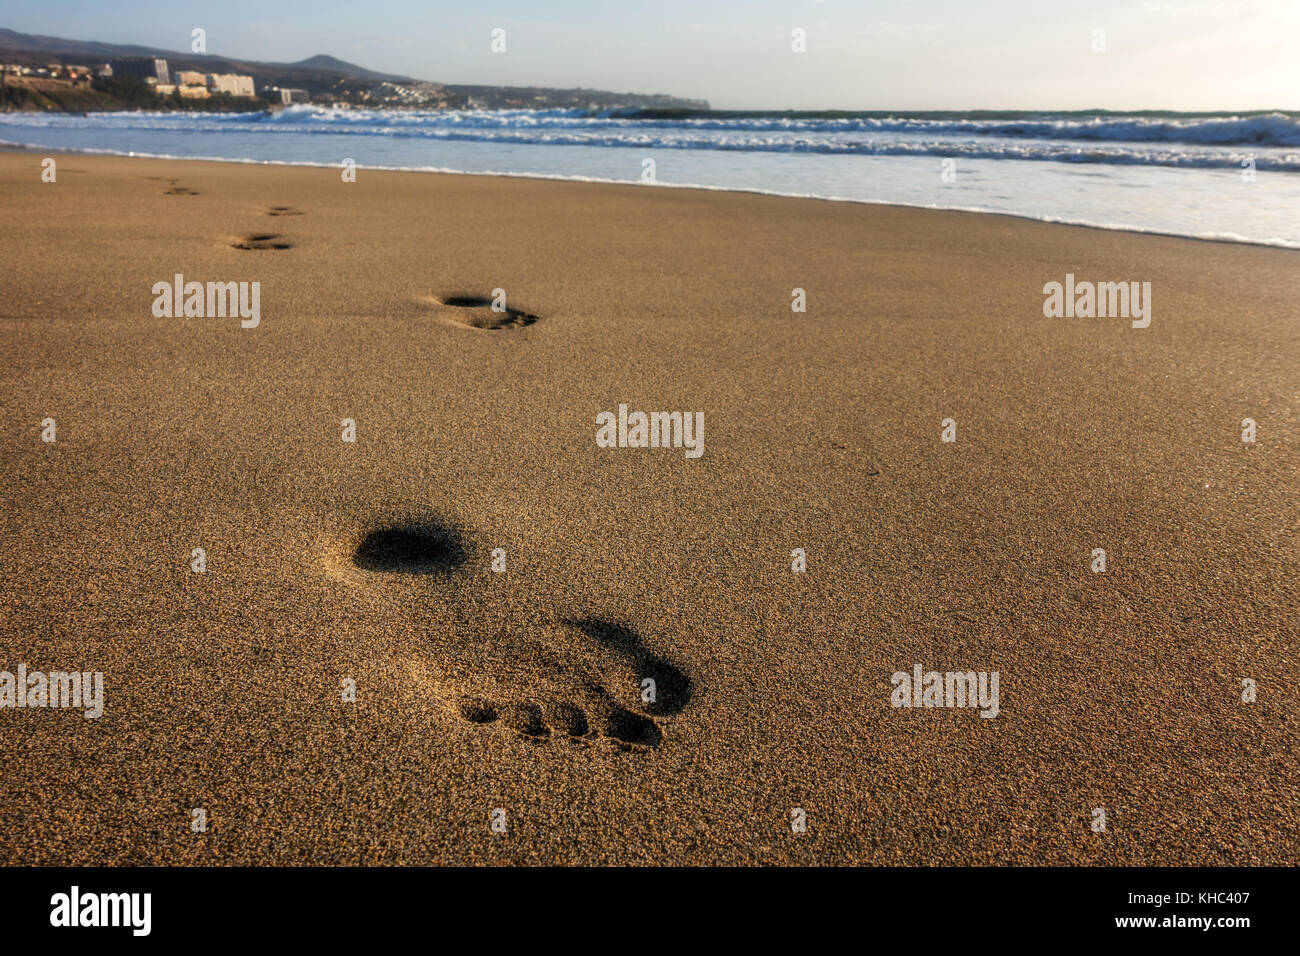 Einsame Spuren im Sand - einer Person Spuren auf einer sauberen Strand am Meer, Playa del Ingles, Küste und Meer, Gran Canaria, Kanarische Inseln Stockfoto